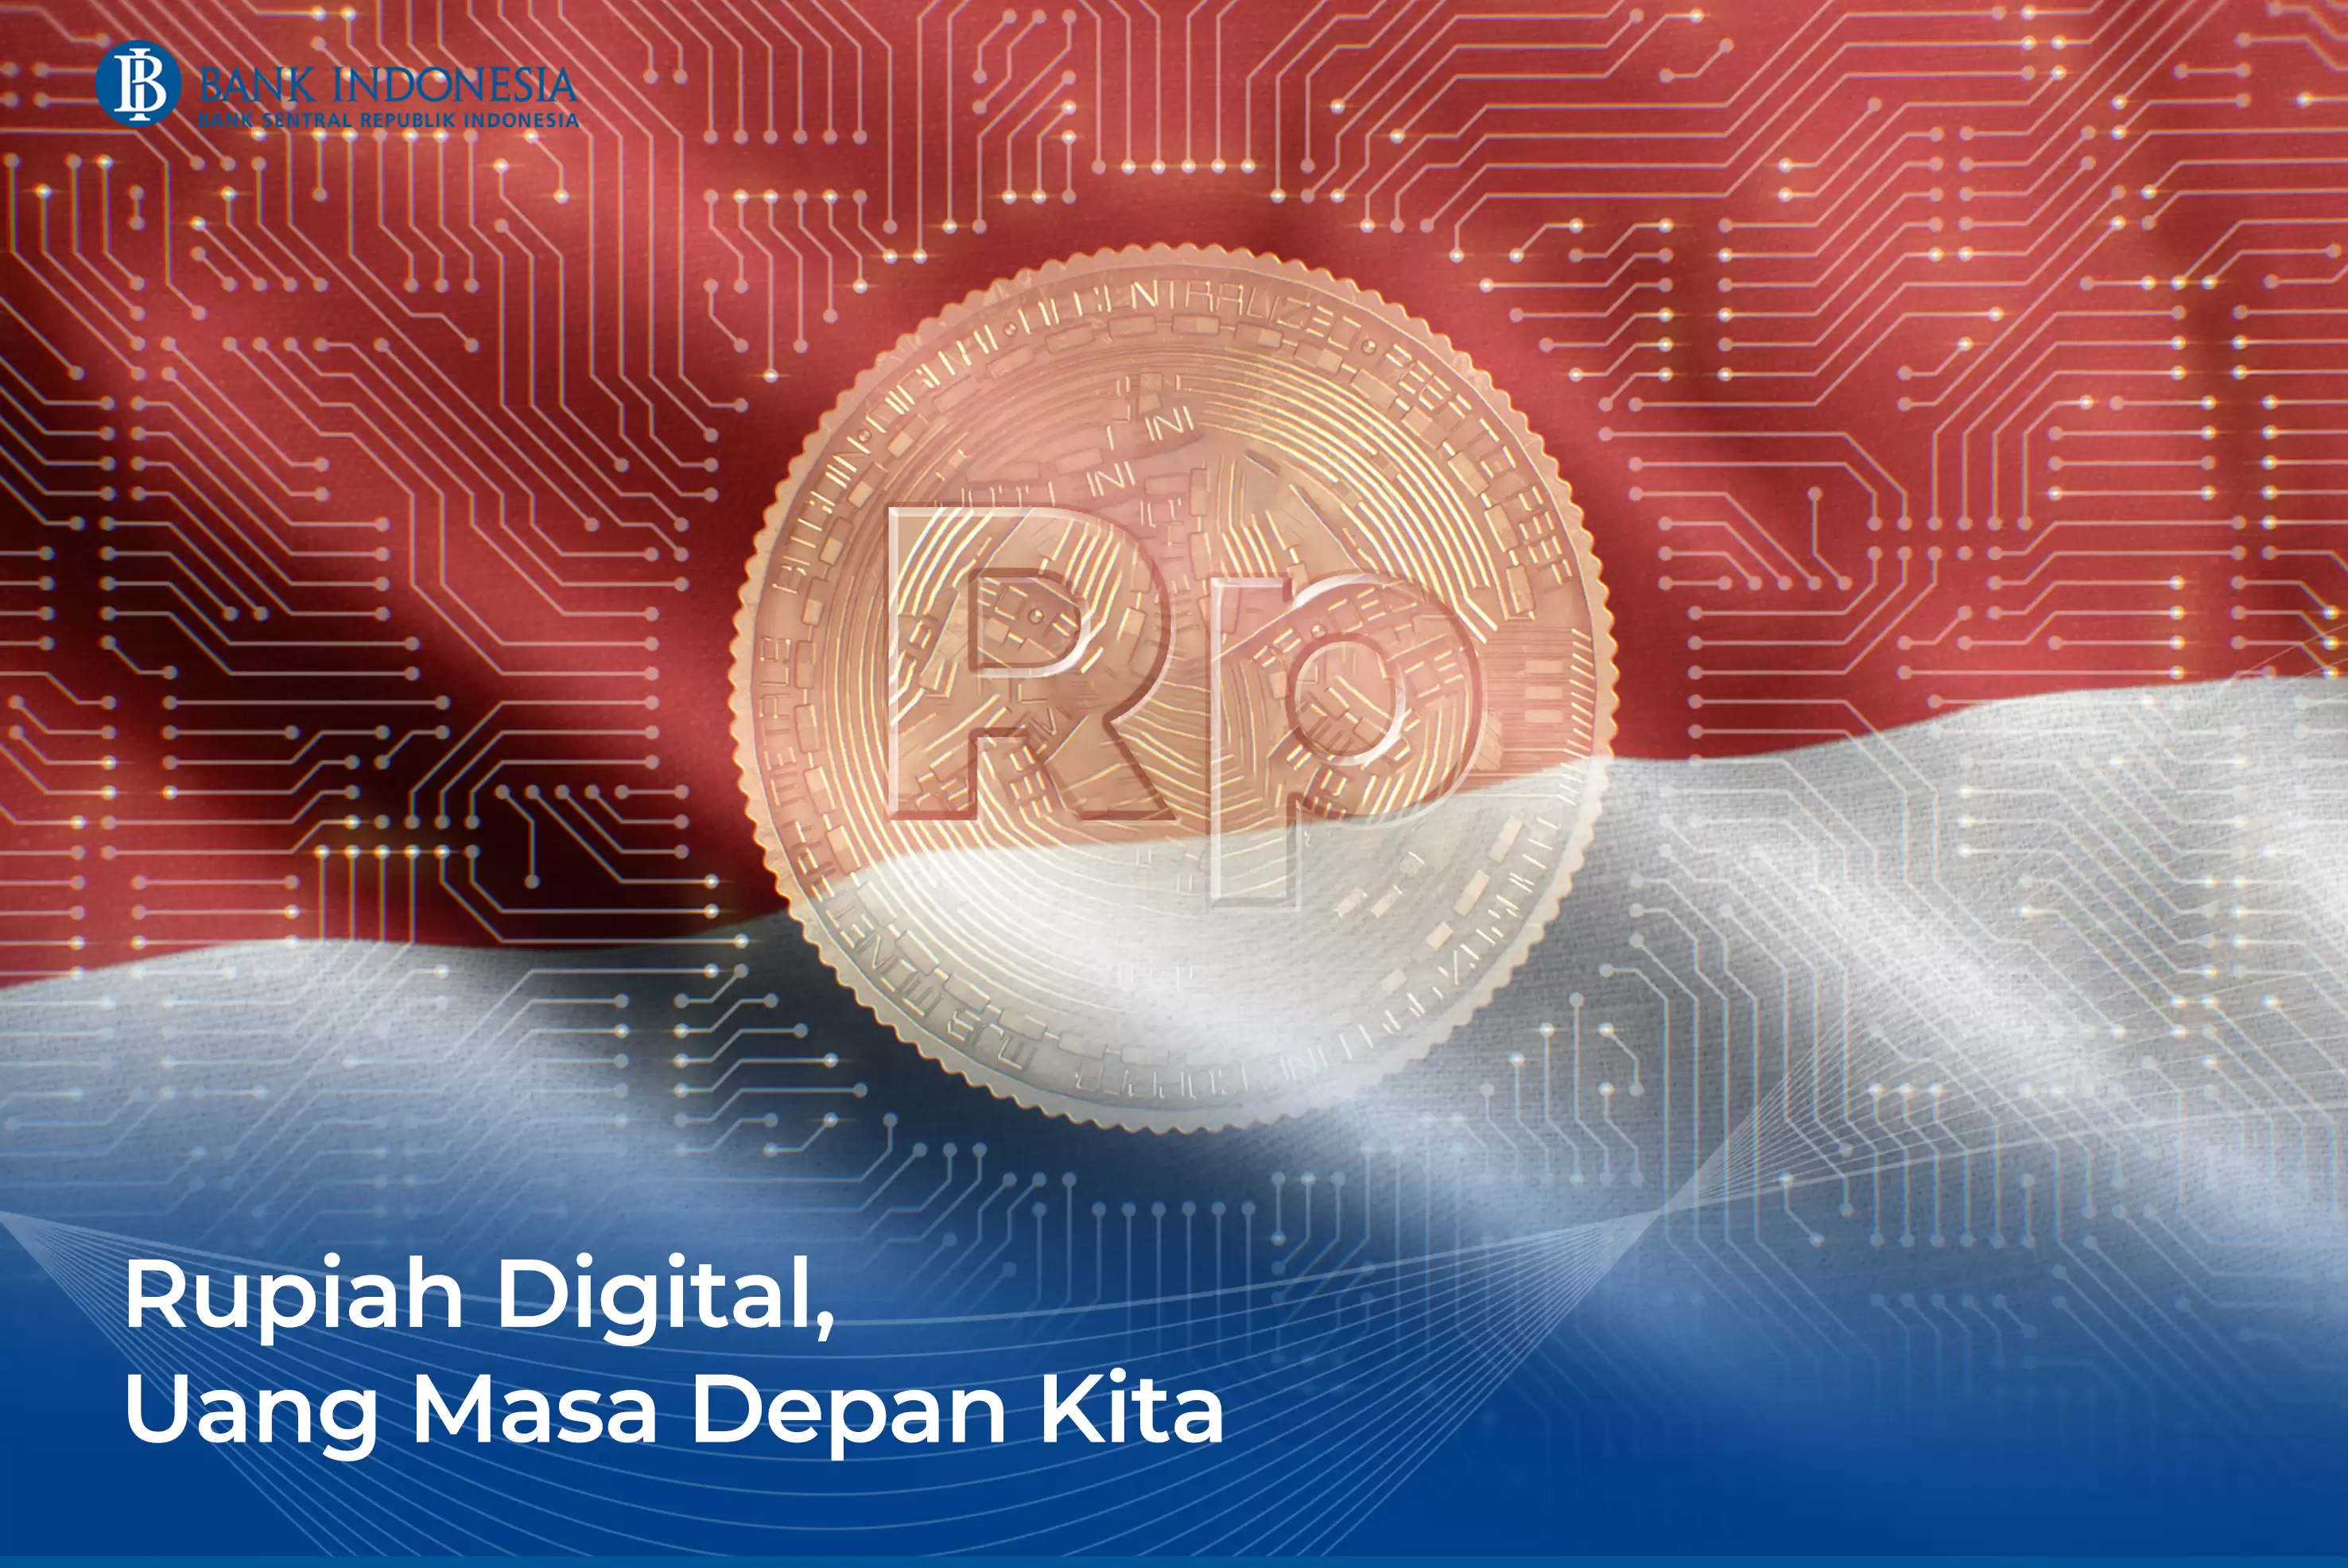 Ilustrasi Rupiah Digital (Foto: Bank Indonesia)